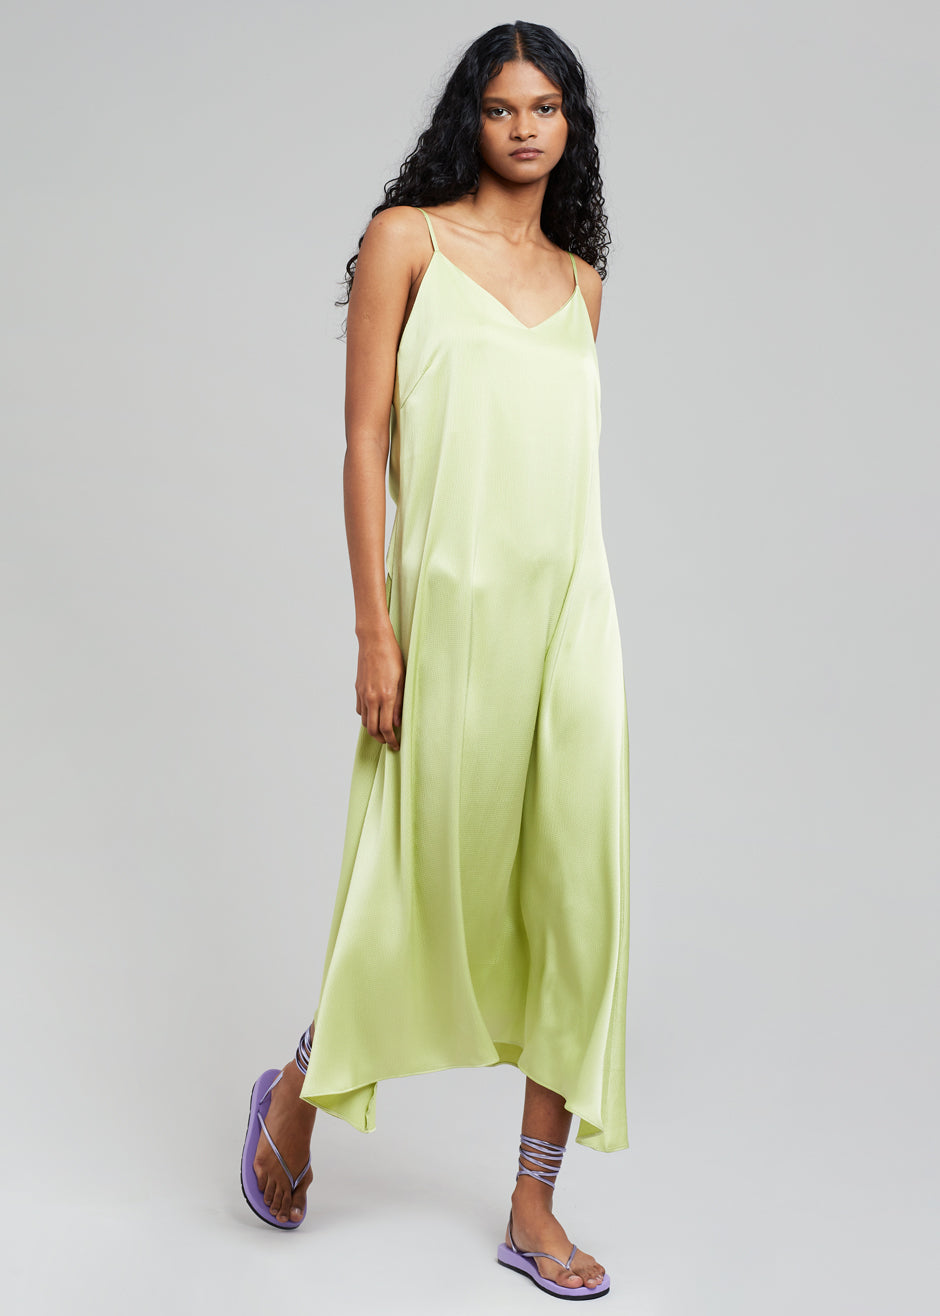 Cordelia Satin Dress - Lime - 3